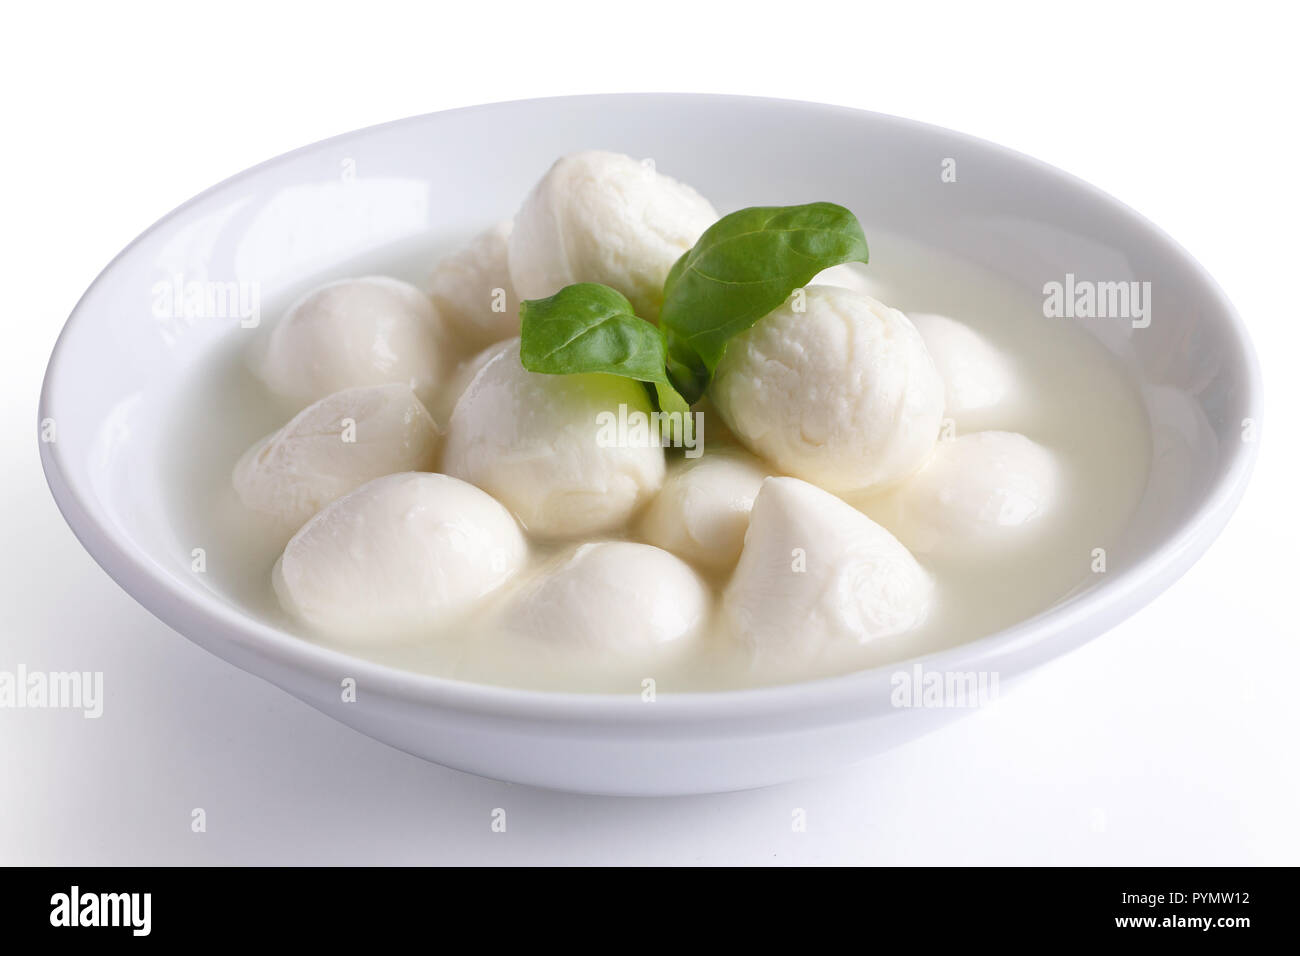 Small white mozzarella balls in a white dish with liquid. Stock Photo